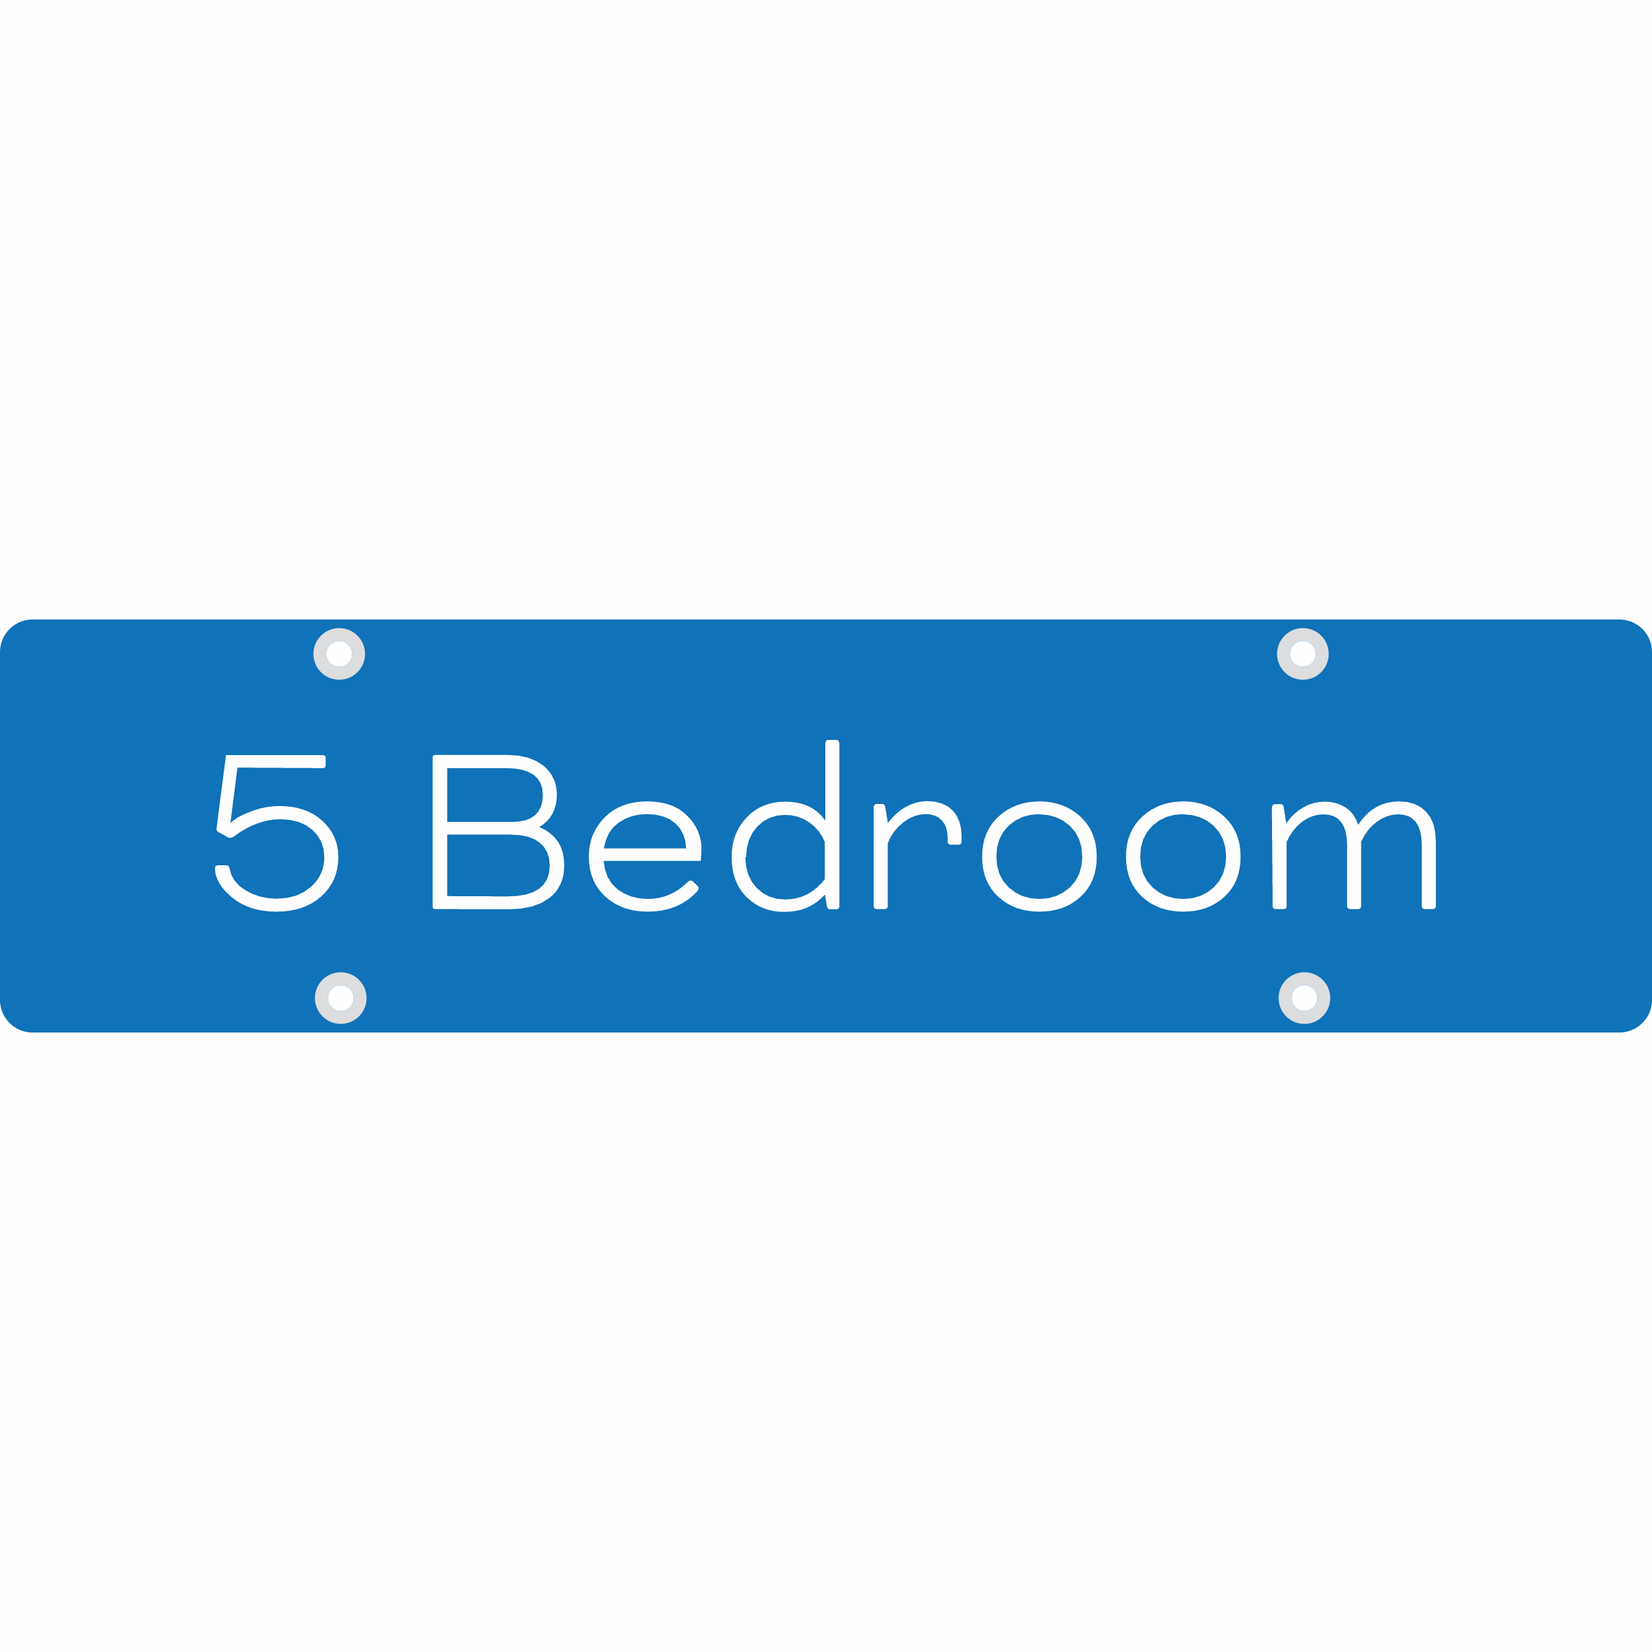 24" x 6" - 5 Bedroom